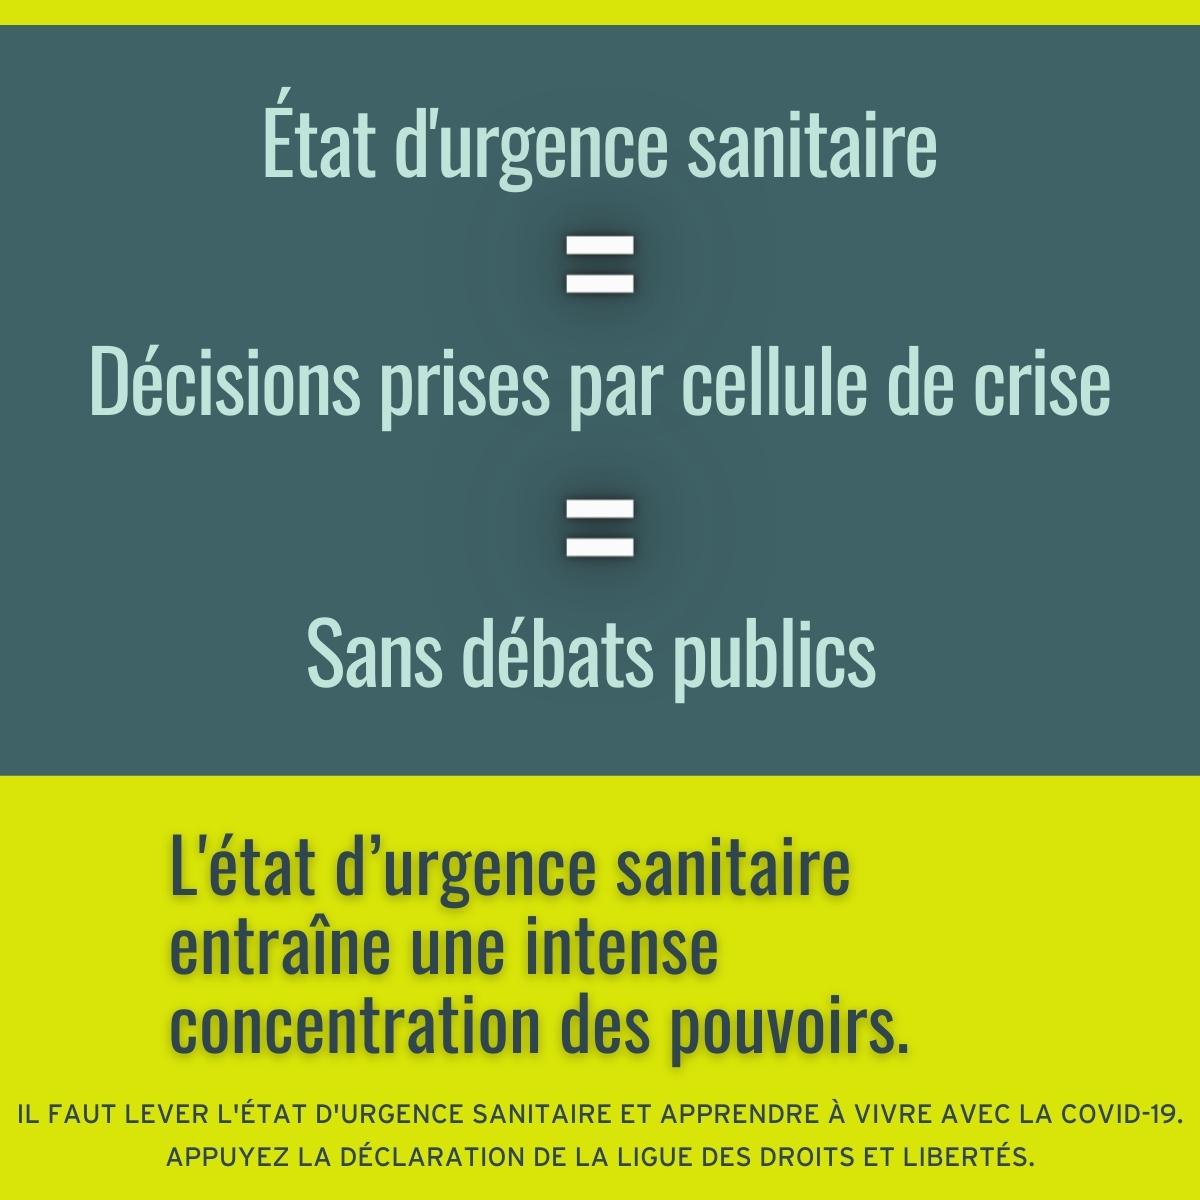 levee_état_d'urgence_sanitaire_concentration_pouvoirs